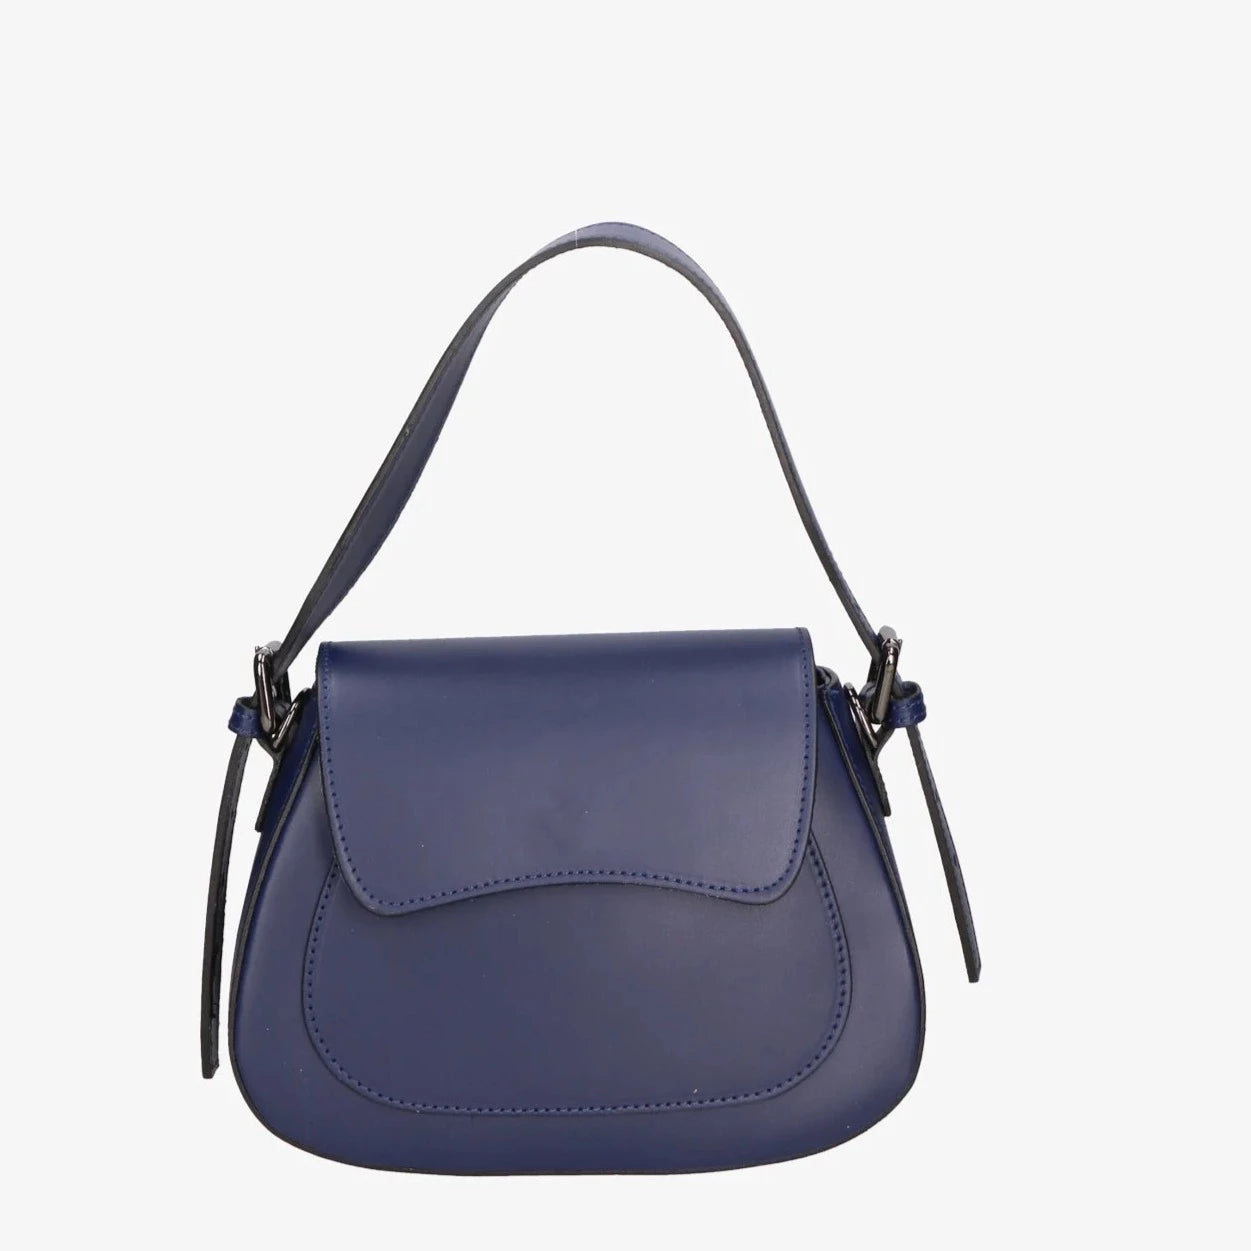 Leather bag with 2 shoulder straps "Milan", Dark blue